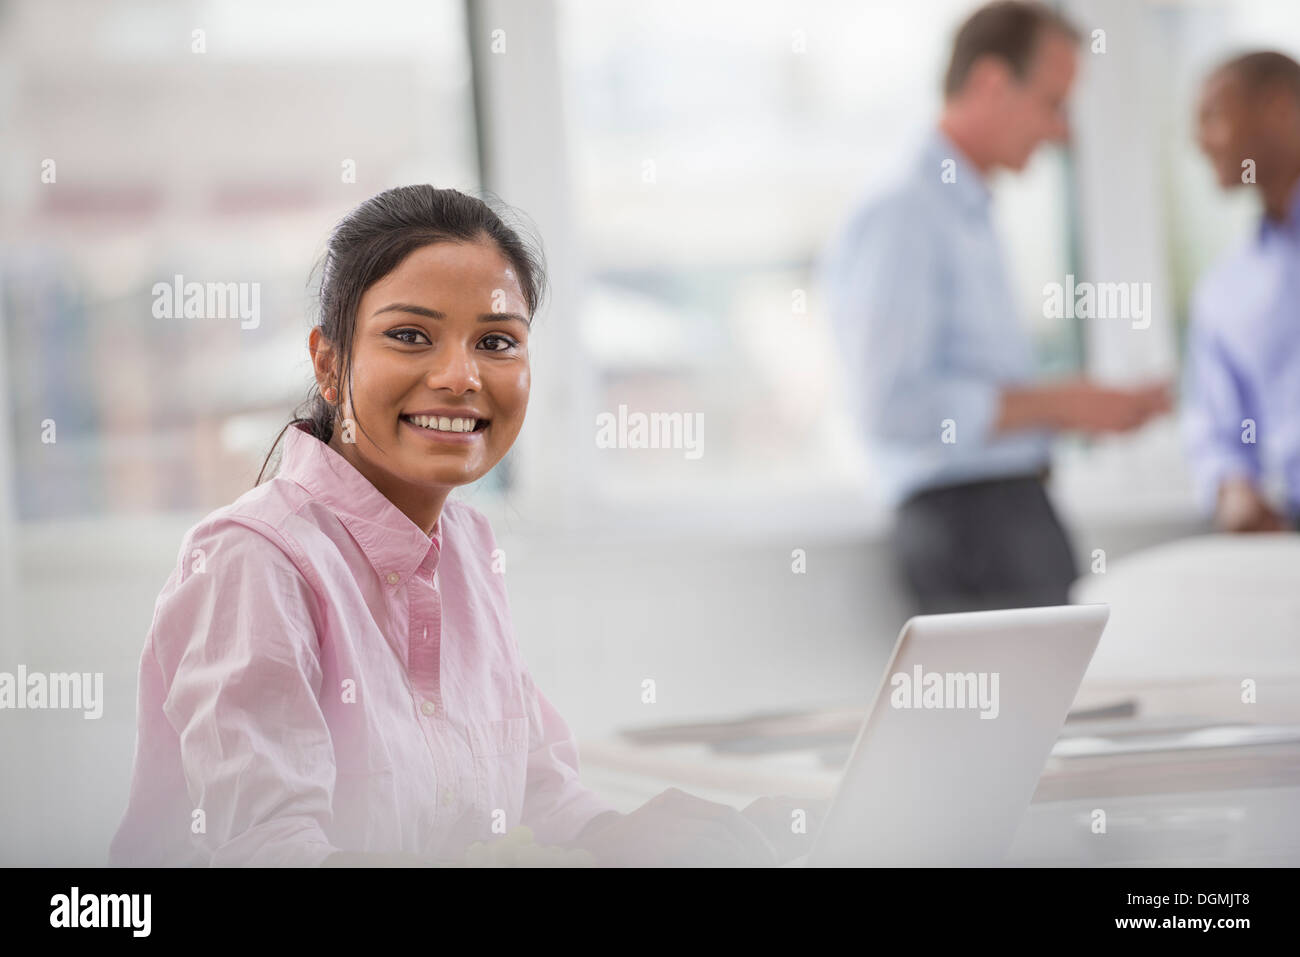 Vita in ufficio. Una donna seduta a una scrivania utilizzando un computer portatile. Due uomini in background. Foto Stock